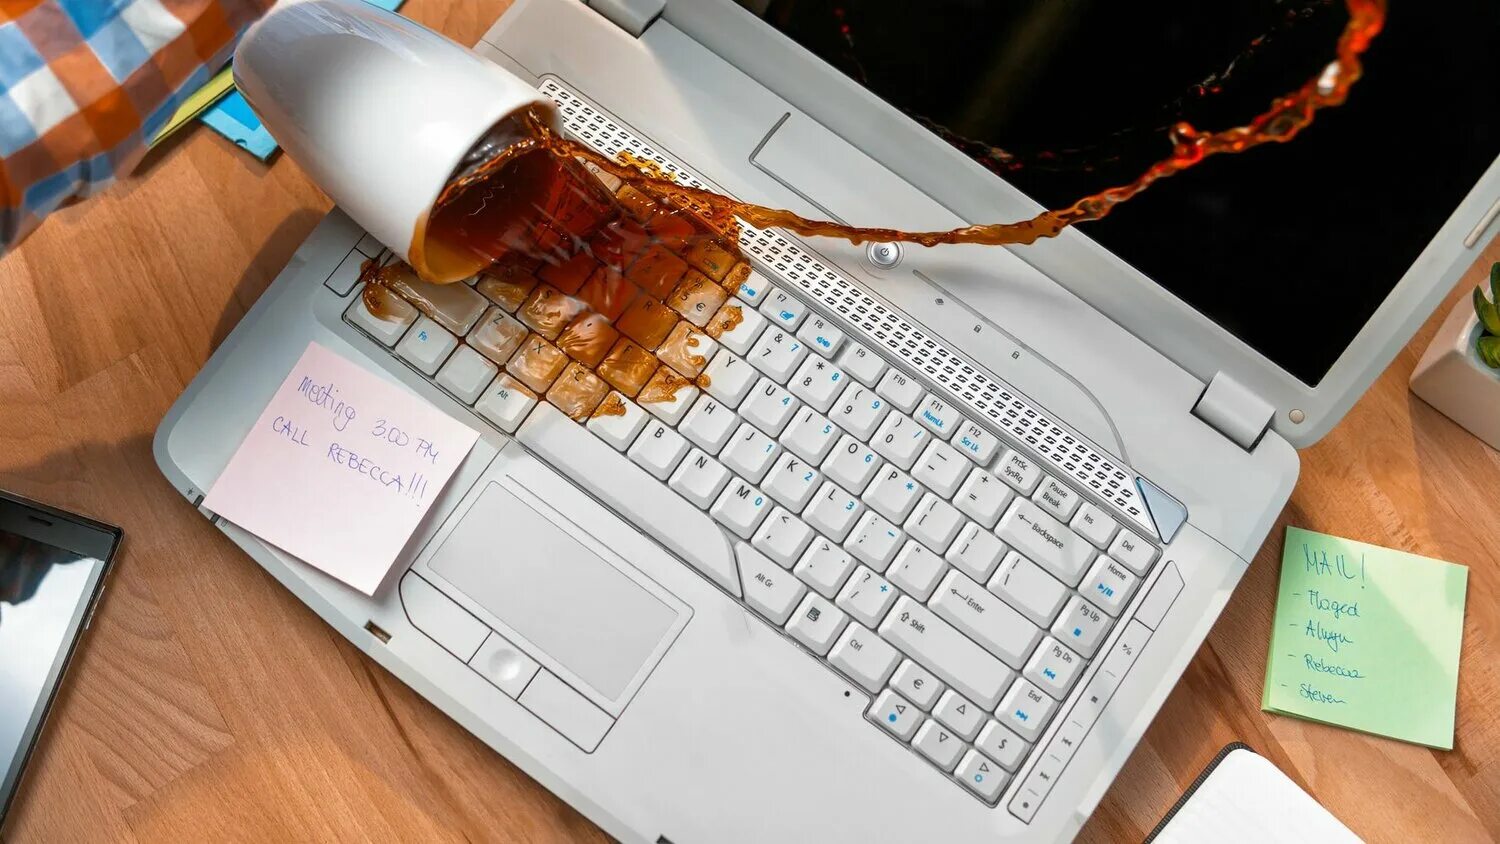 Ноутбук после залития. Пролили жидкость на ноутбук. Пролил на клавиатуру. Пролитый кофе на клавиатуру. Пролил чай на клавиатуру.